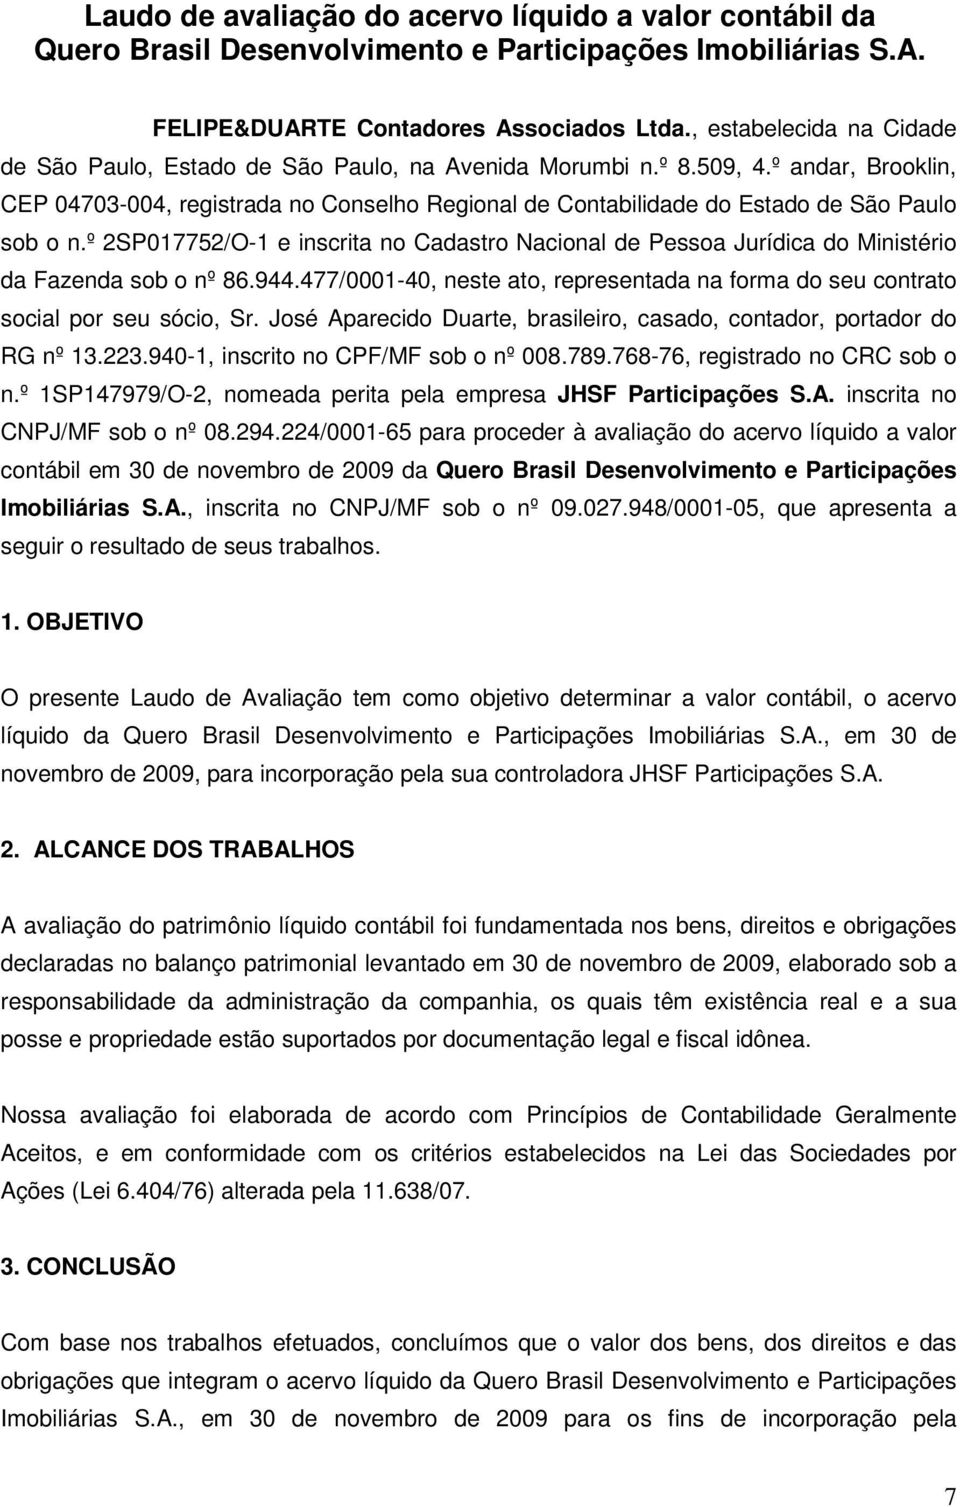 º andar, Brooklin, CEP 04703-004, registrada no Conselho Regional de Contabilidade do Estado de São Paulo sob o n.